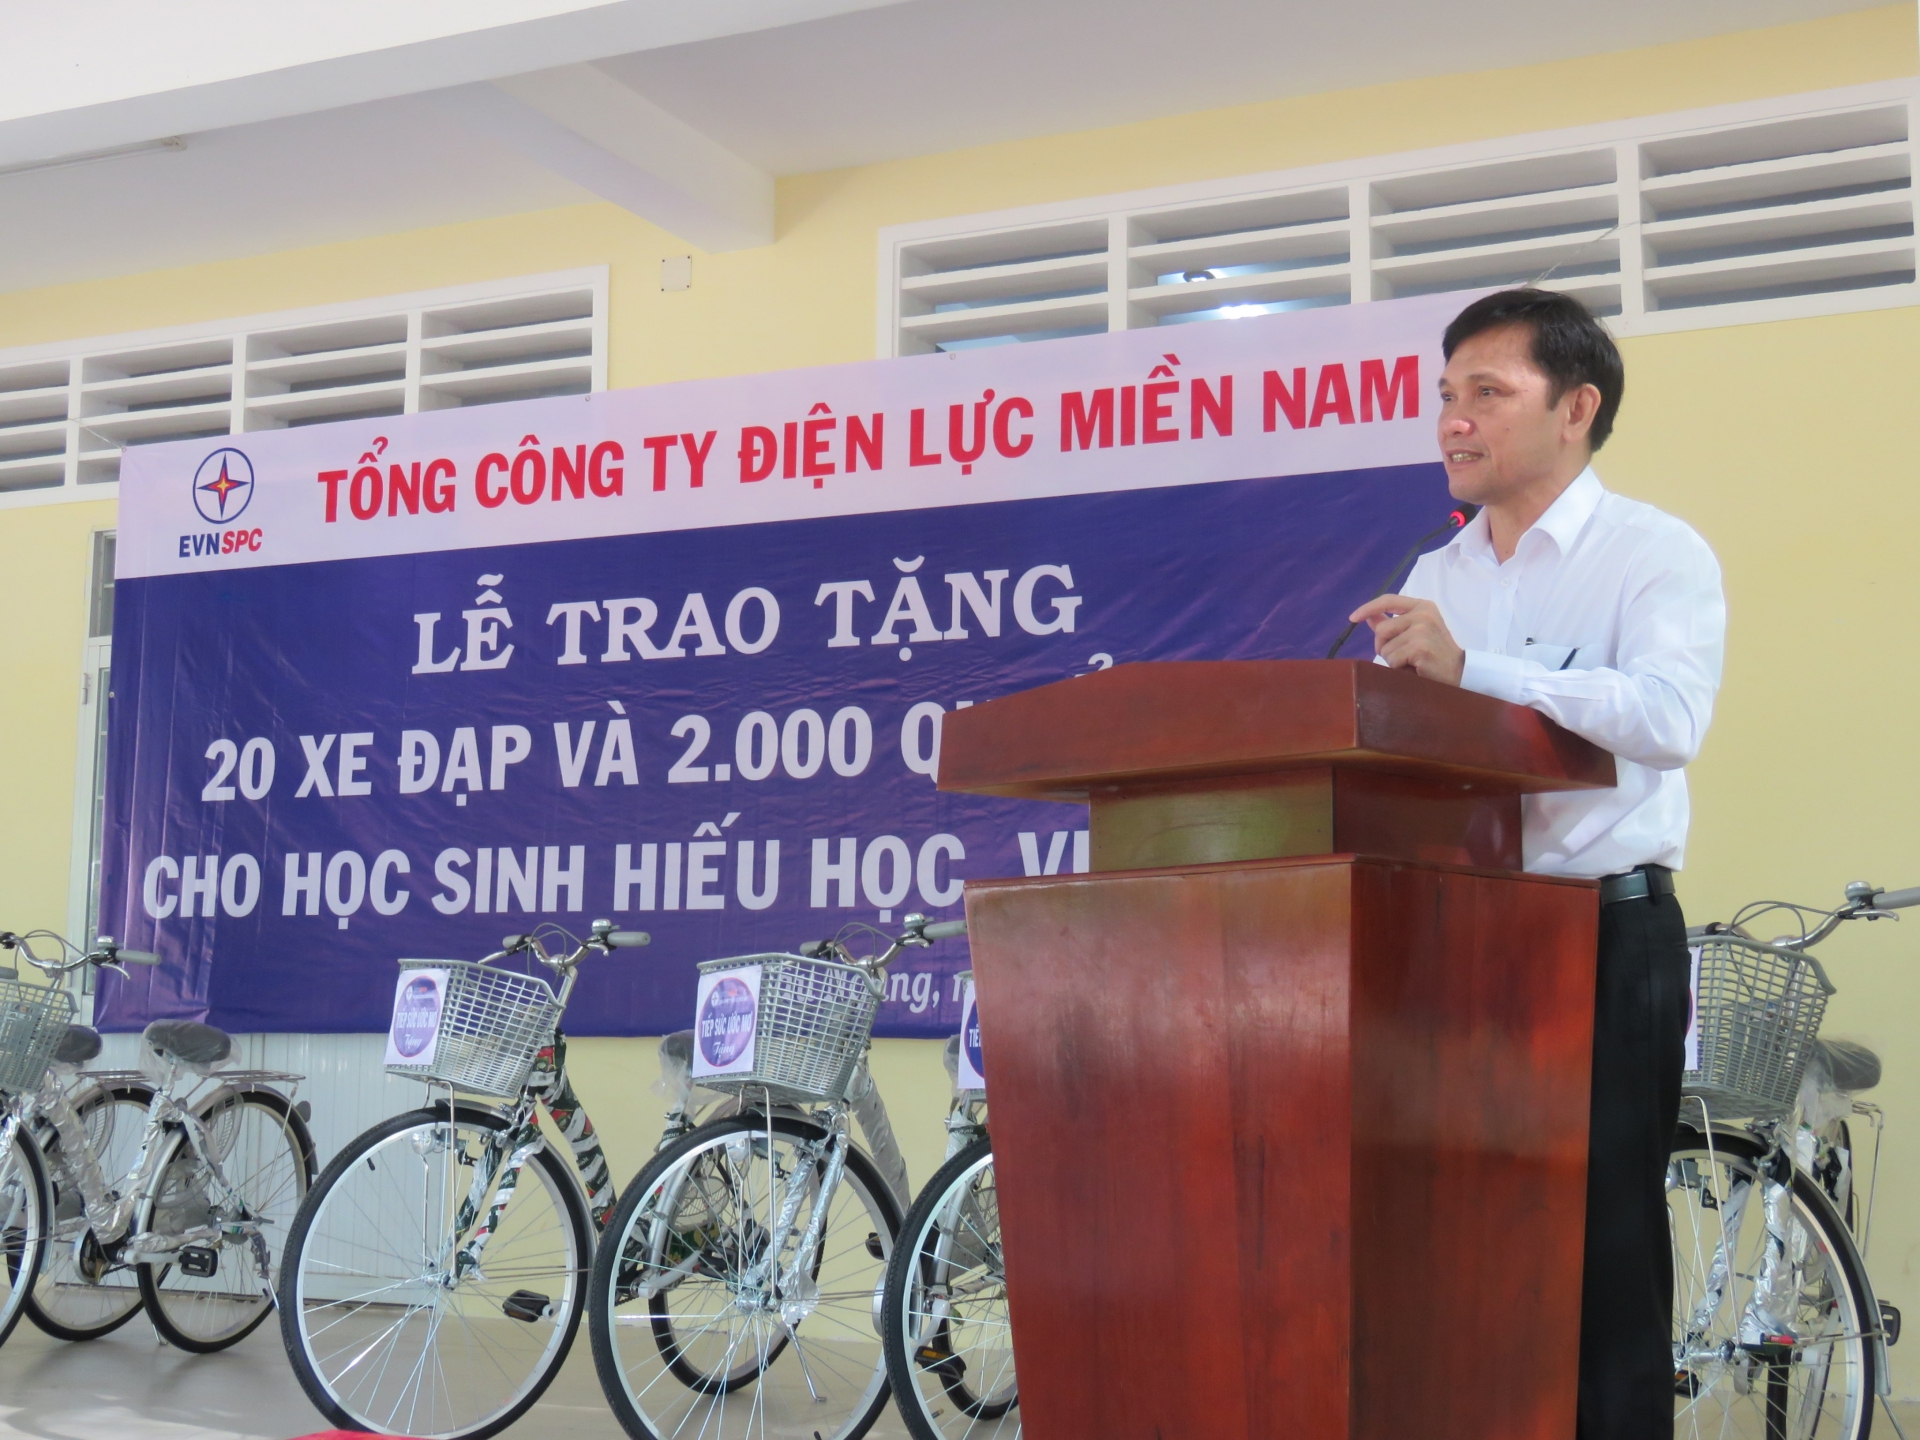 EVNSPC tặng xe đạp, động viên các em học sinh người Khmer tiếp tục đến trường